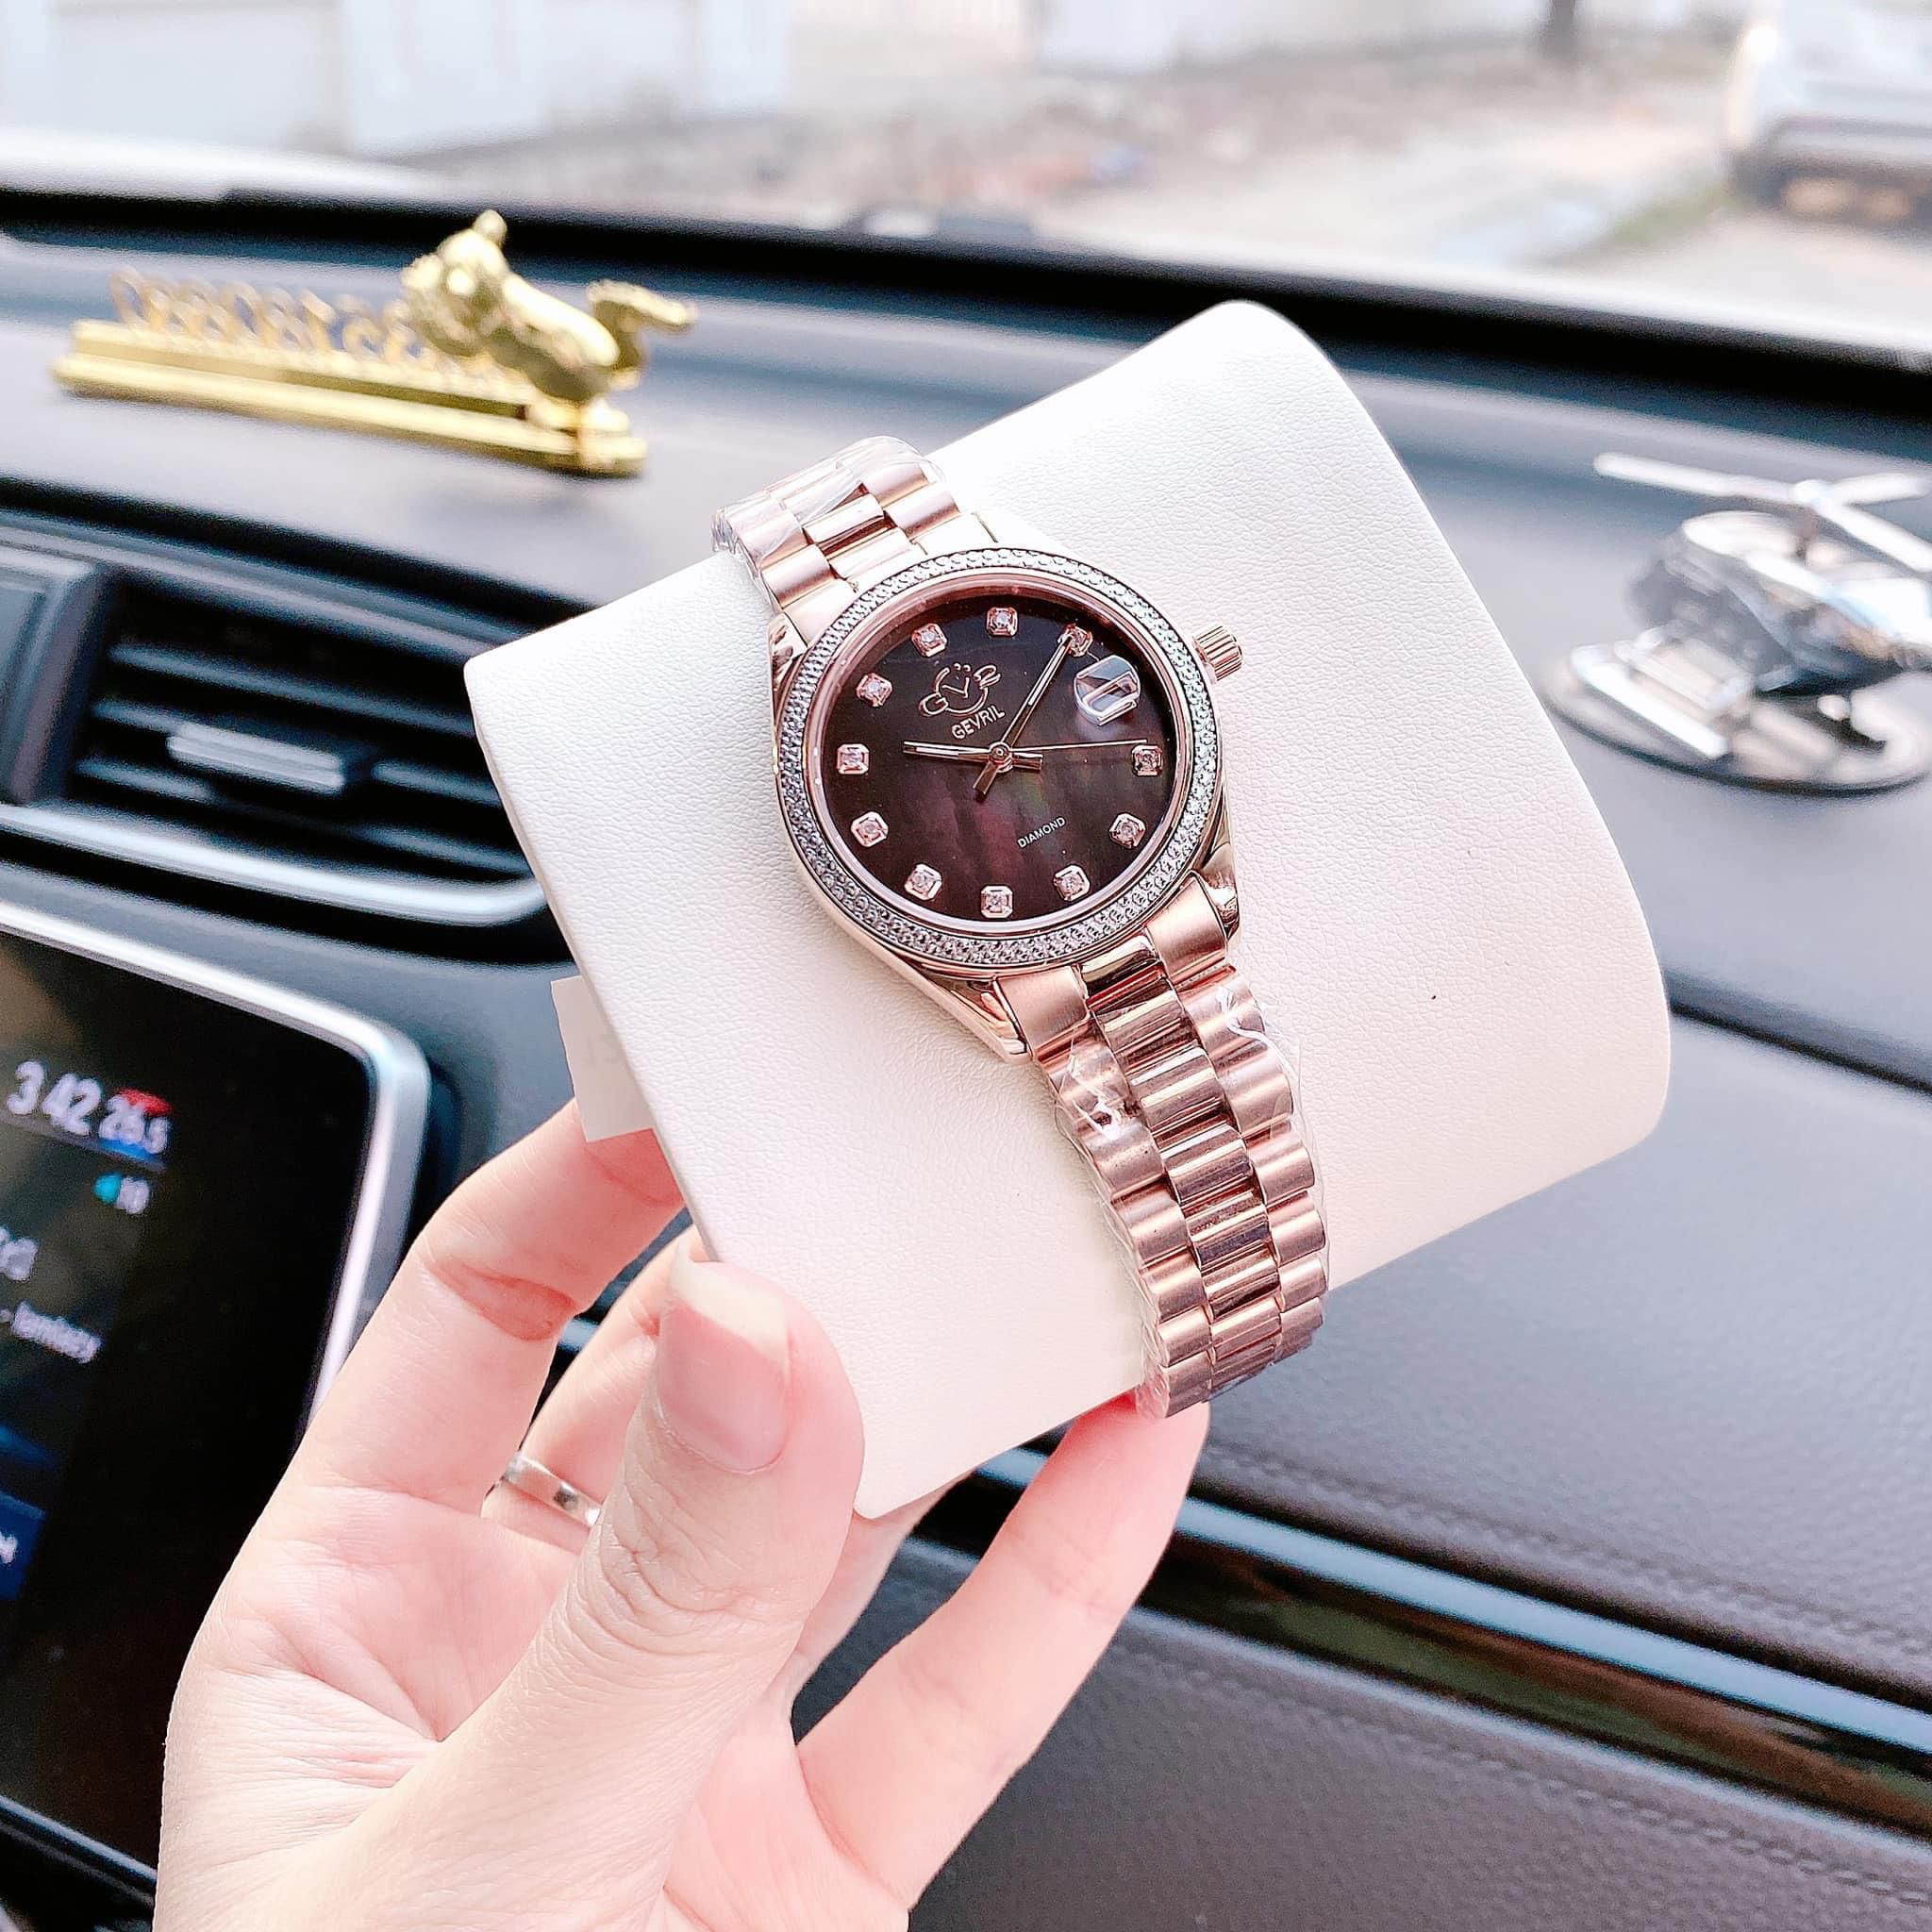 Đánh giá đồng hồ GV2 BY GEVRIL Turin Women's Watch: Thiết kế cổ điển, tính năng hiện đại, bộ máy hoạt động tốt với giá thành hợp lý